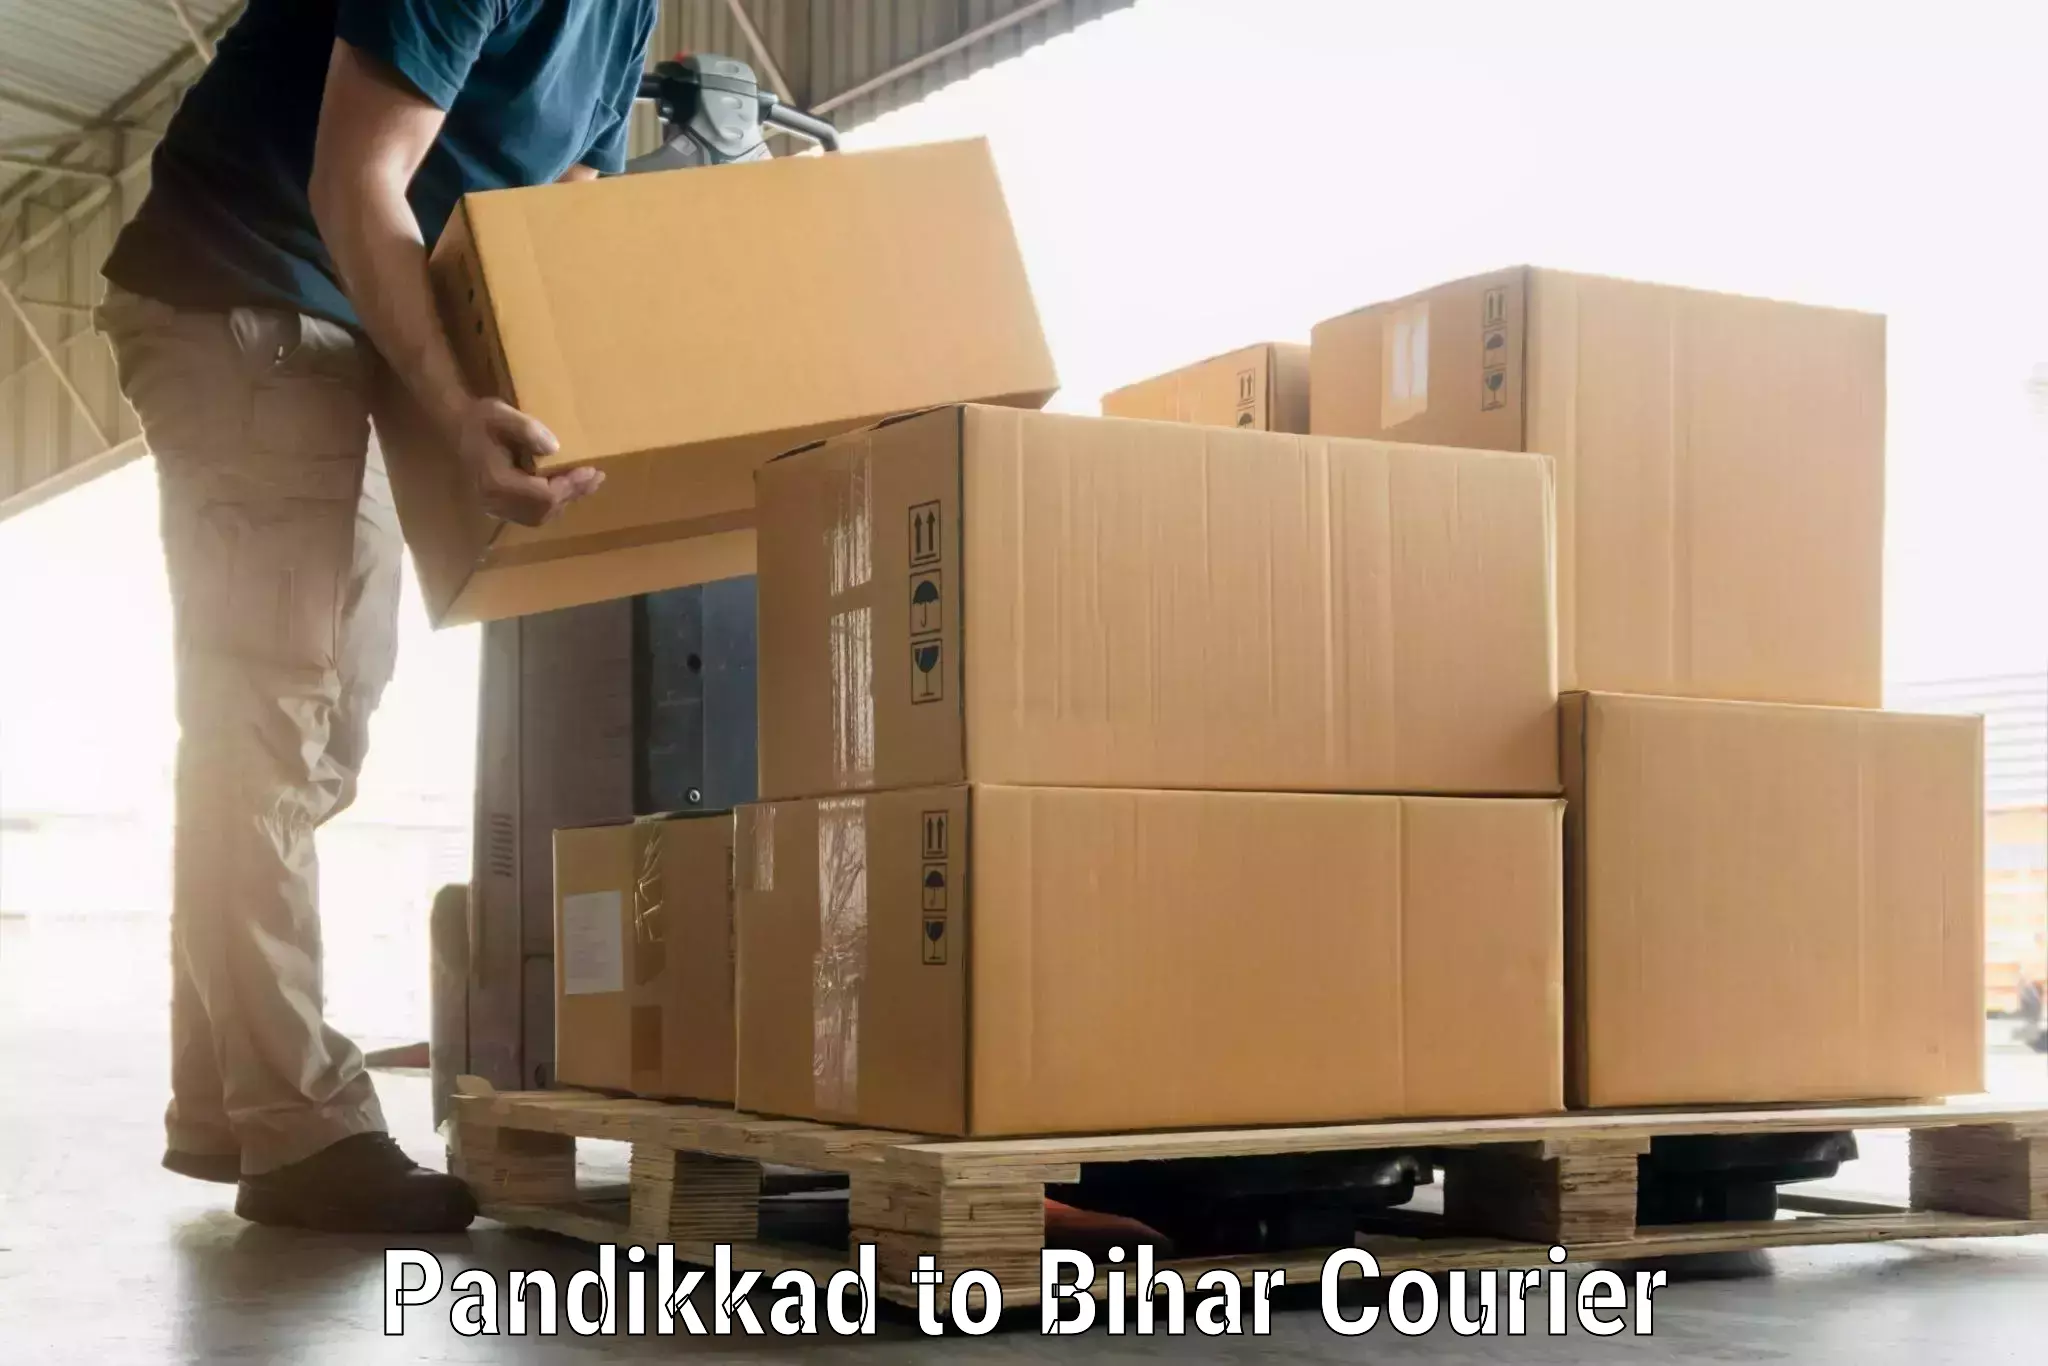 Baggage shipping schedule Pandikkad to Mahaddipur